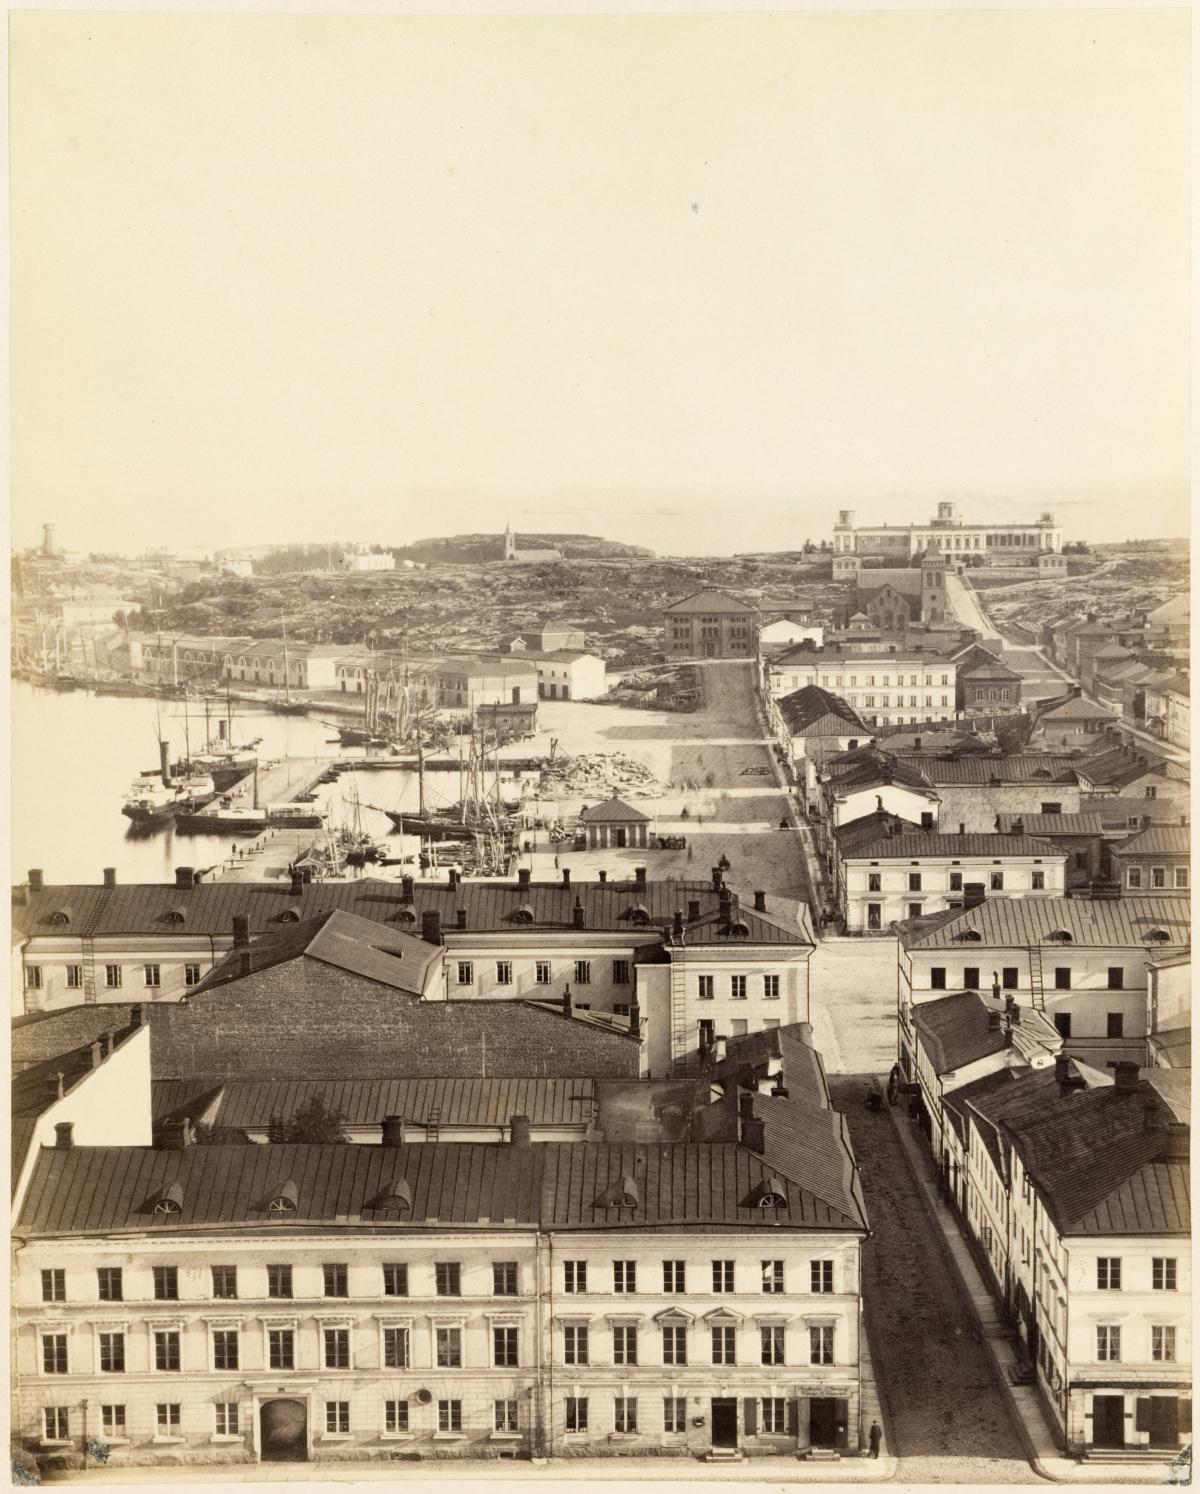 Vanha mustavalkoinen kuva jossa näkyy Helsinkiä 1800-luvun lopun asussa. Etualalla Senaatintori